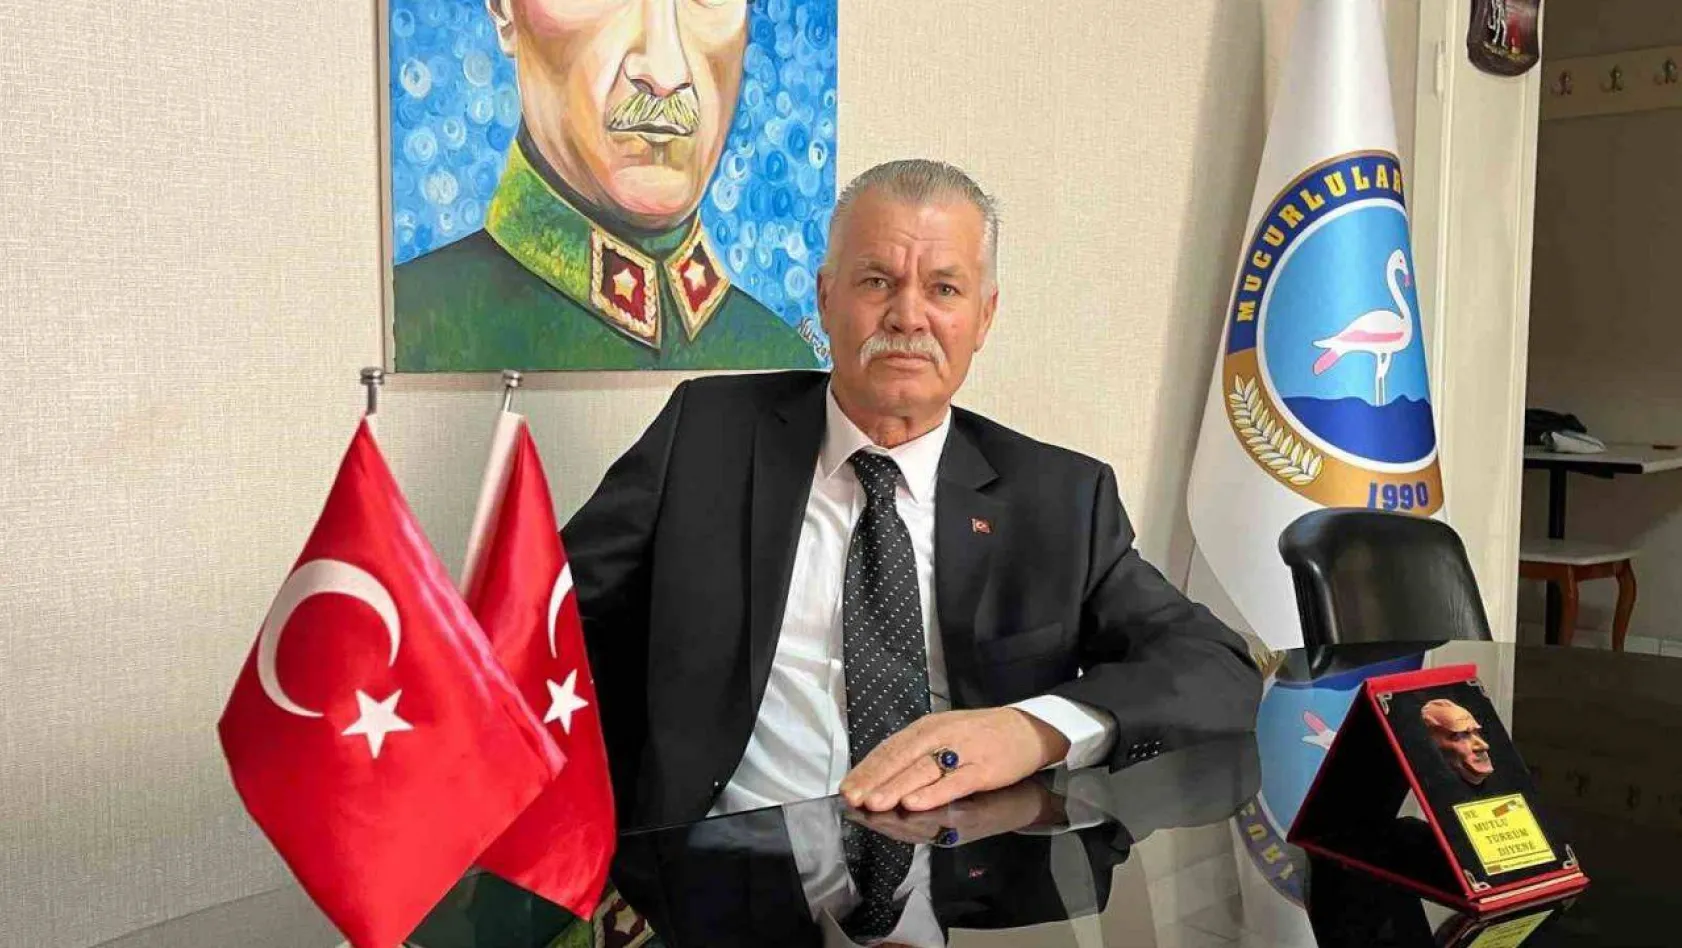 CHP'li belediye başkan adayı kümes ve tilki benzetmesi yapmıştı, dernek başkanı tepkisini İHA'ya anlattı